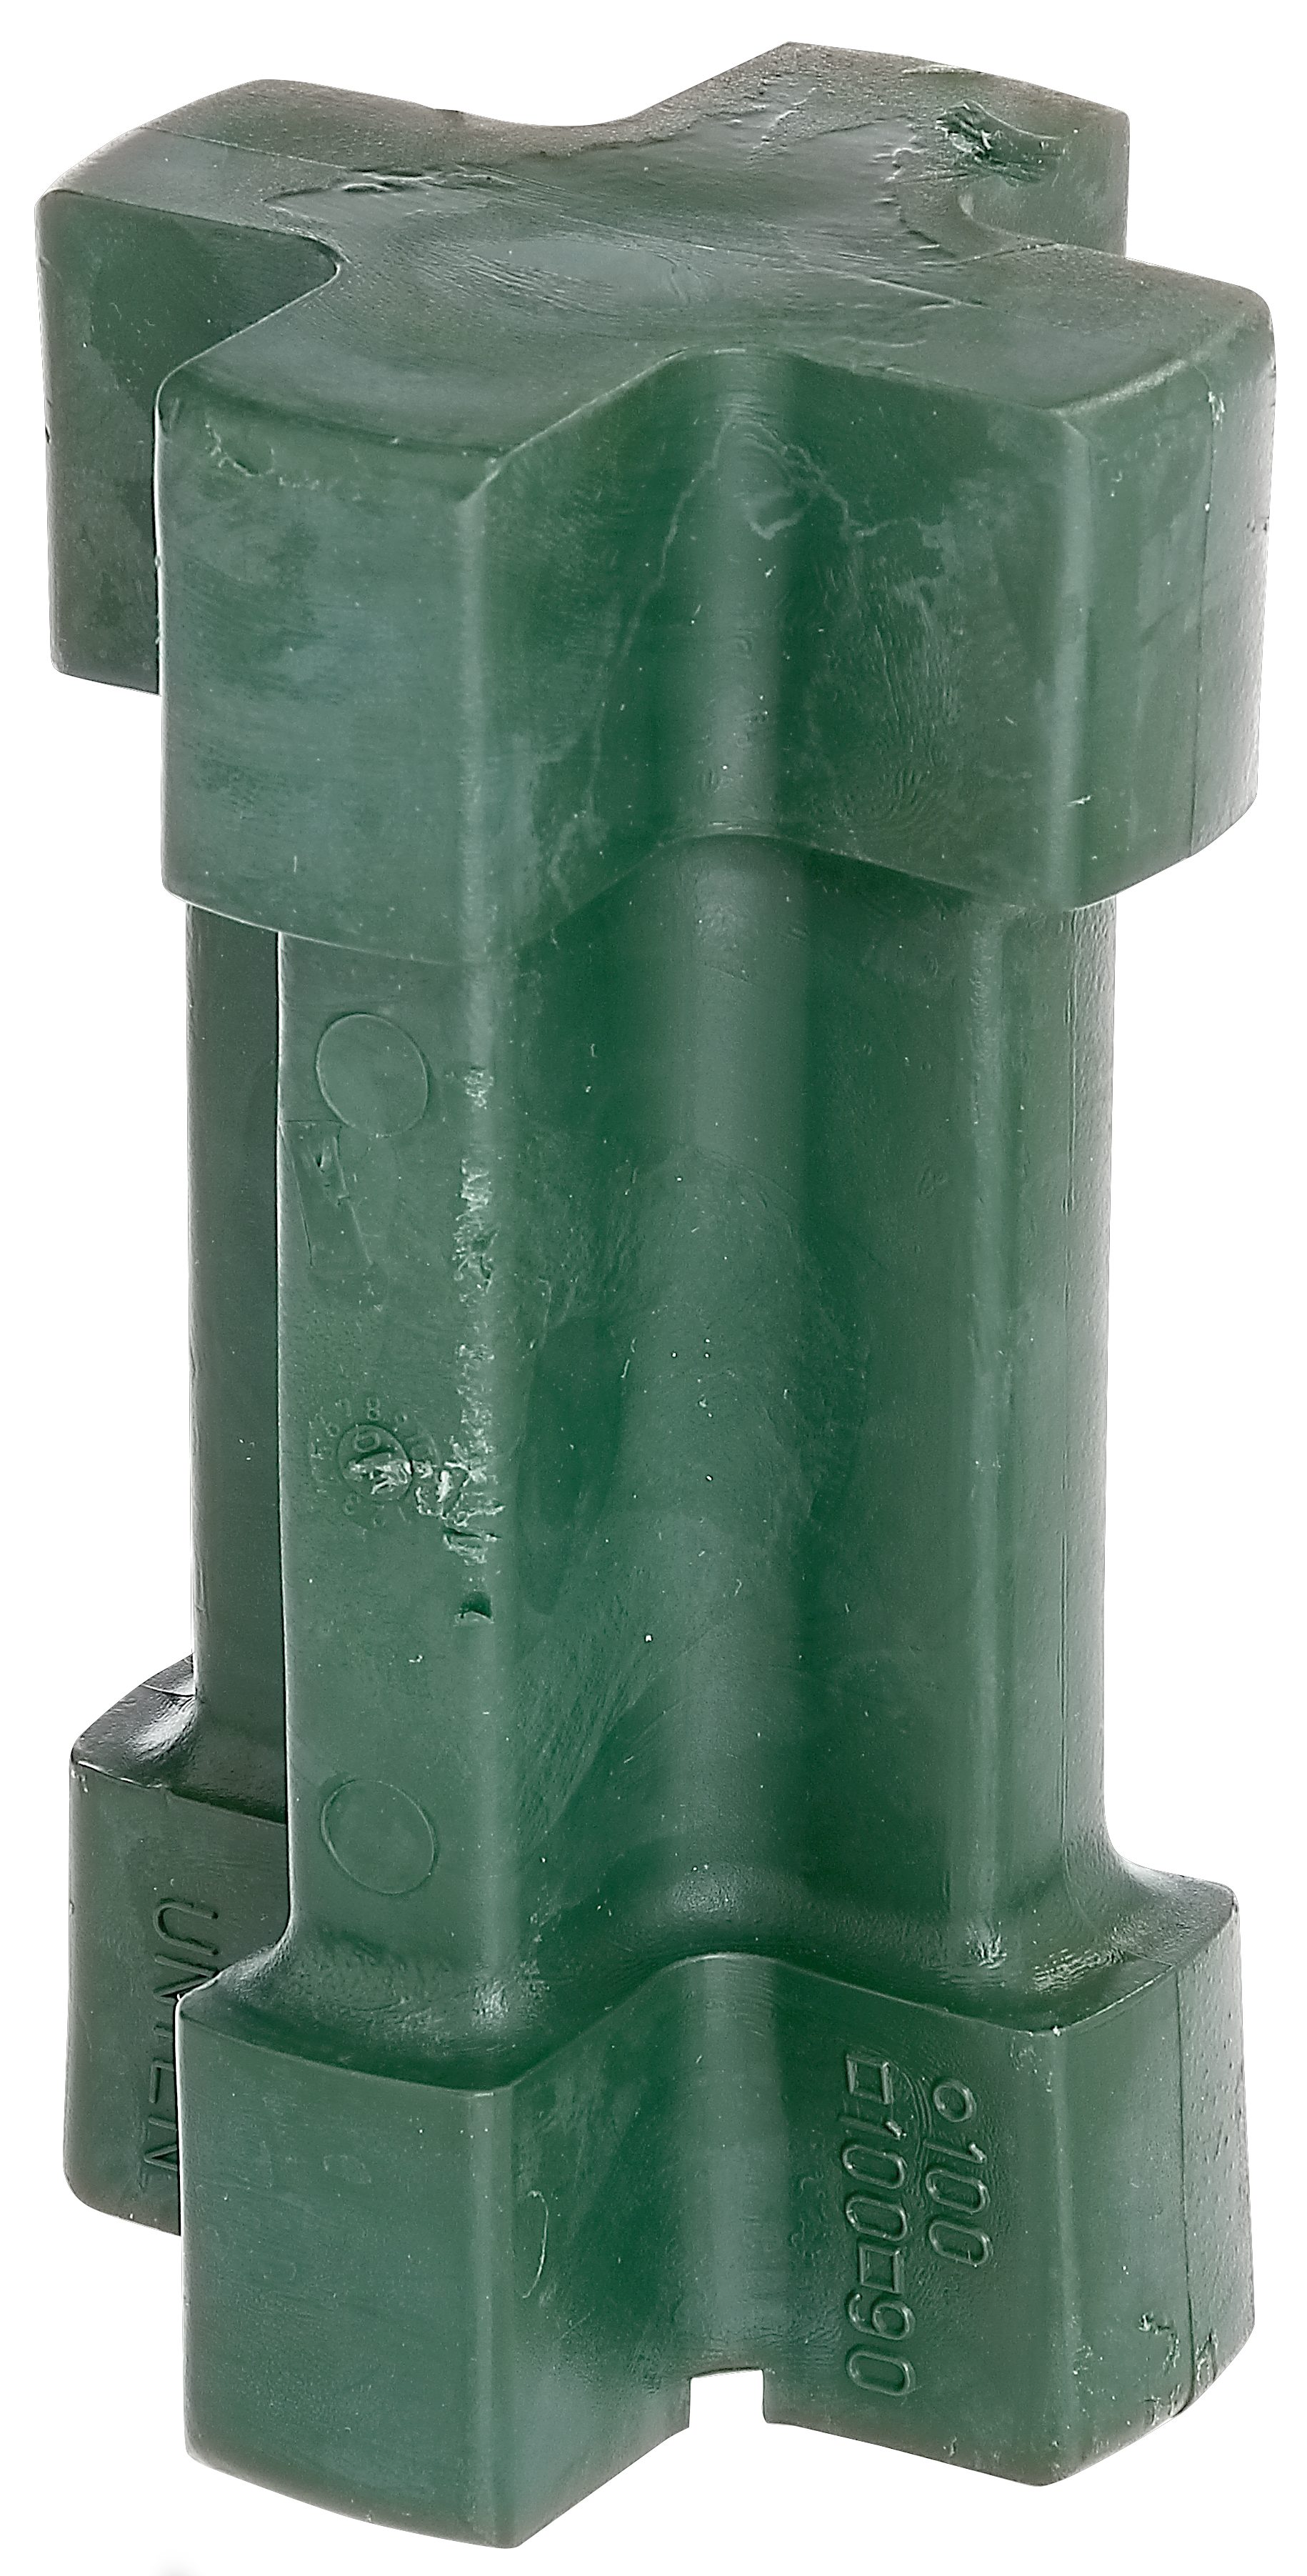 Alberts Einschlagbodenhülse Einschlag-Werkzeug für eckige Einschlag-Bodenhülsen 90 x 90 mm / 100 x 100 mm sowie für Ø100 mm, Kunststoff, grün